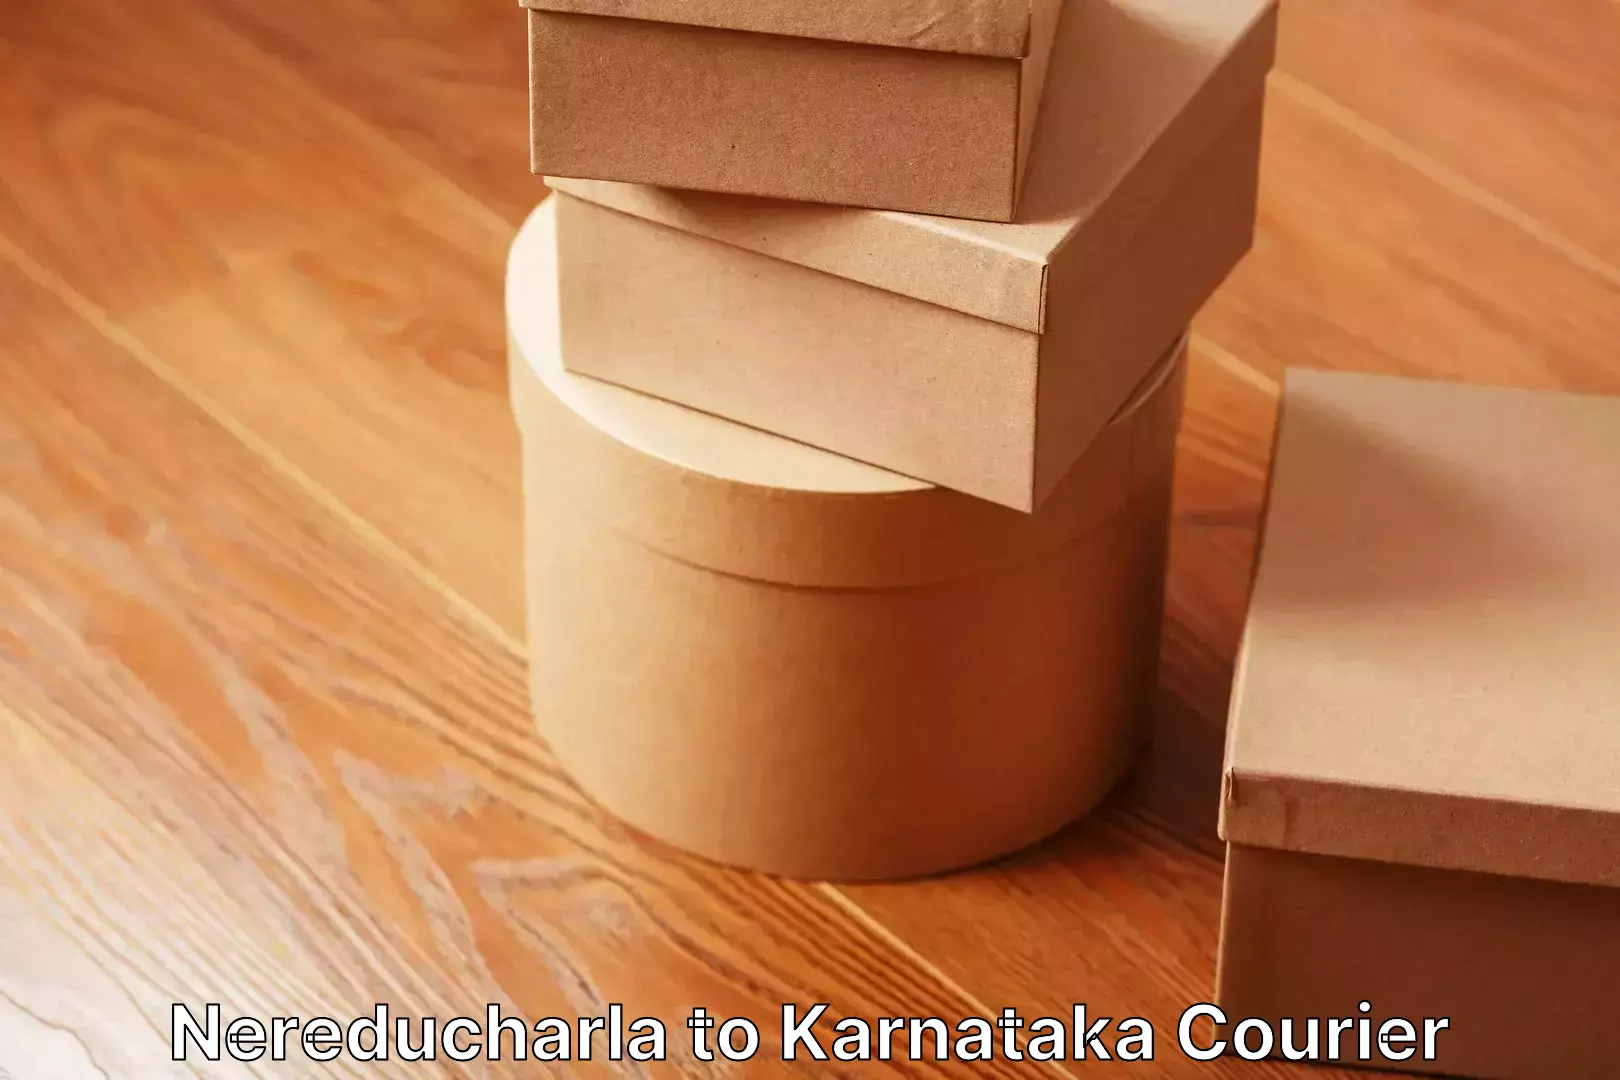 Home moving experts Nereducharla to Karnataka